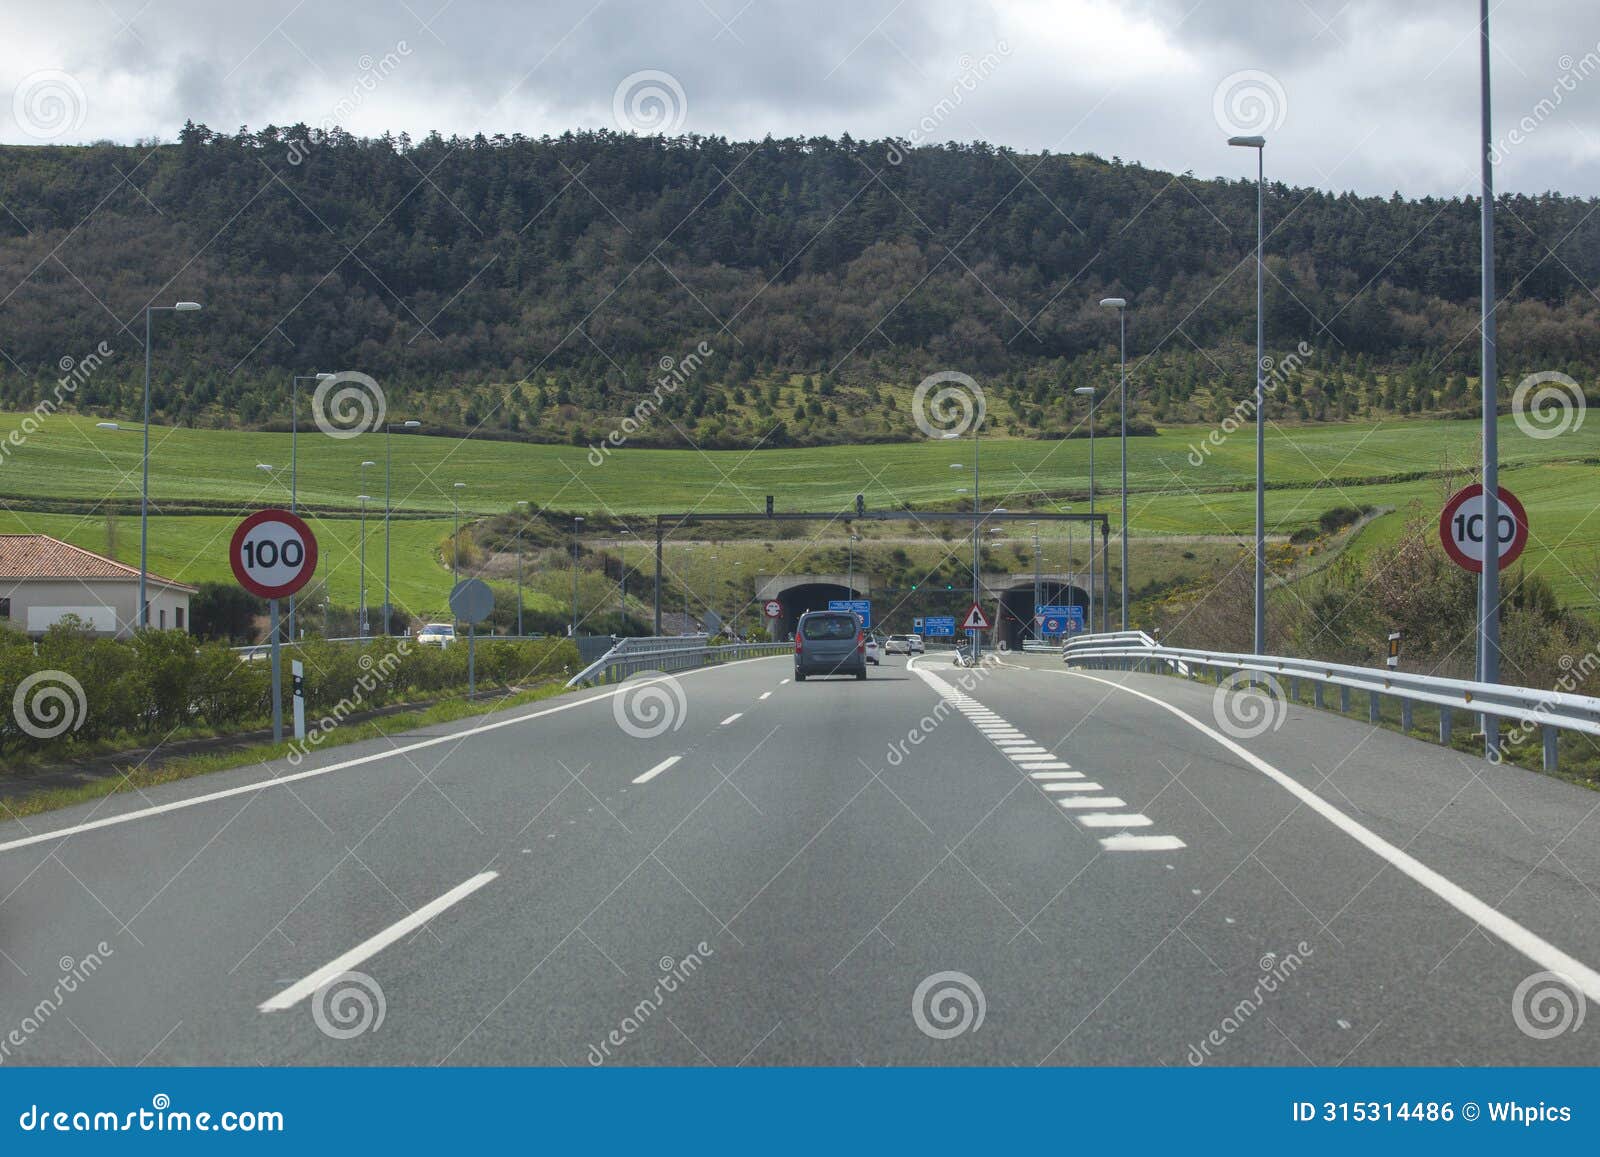 driving along a-12 highway. also known as autovia del camino de santiago